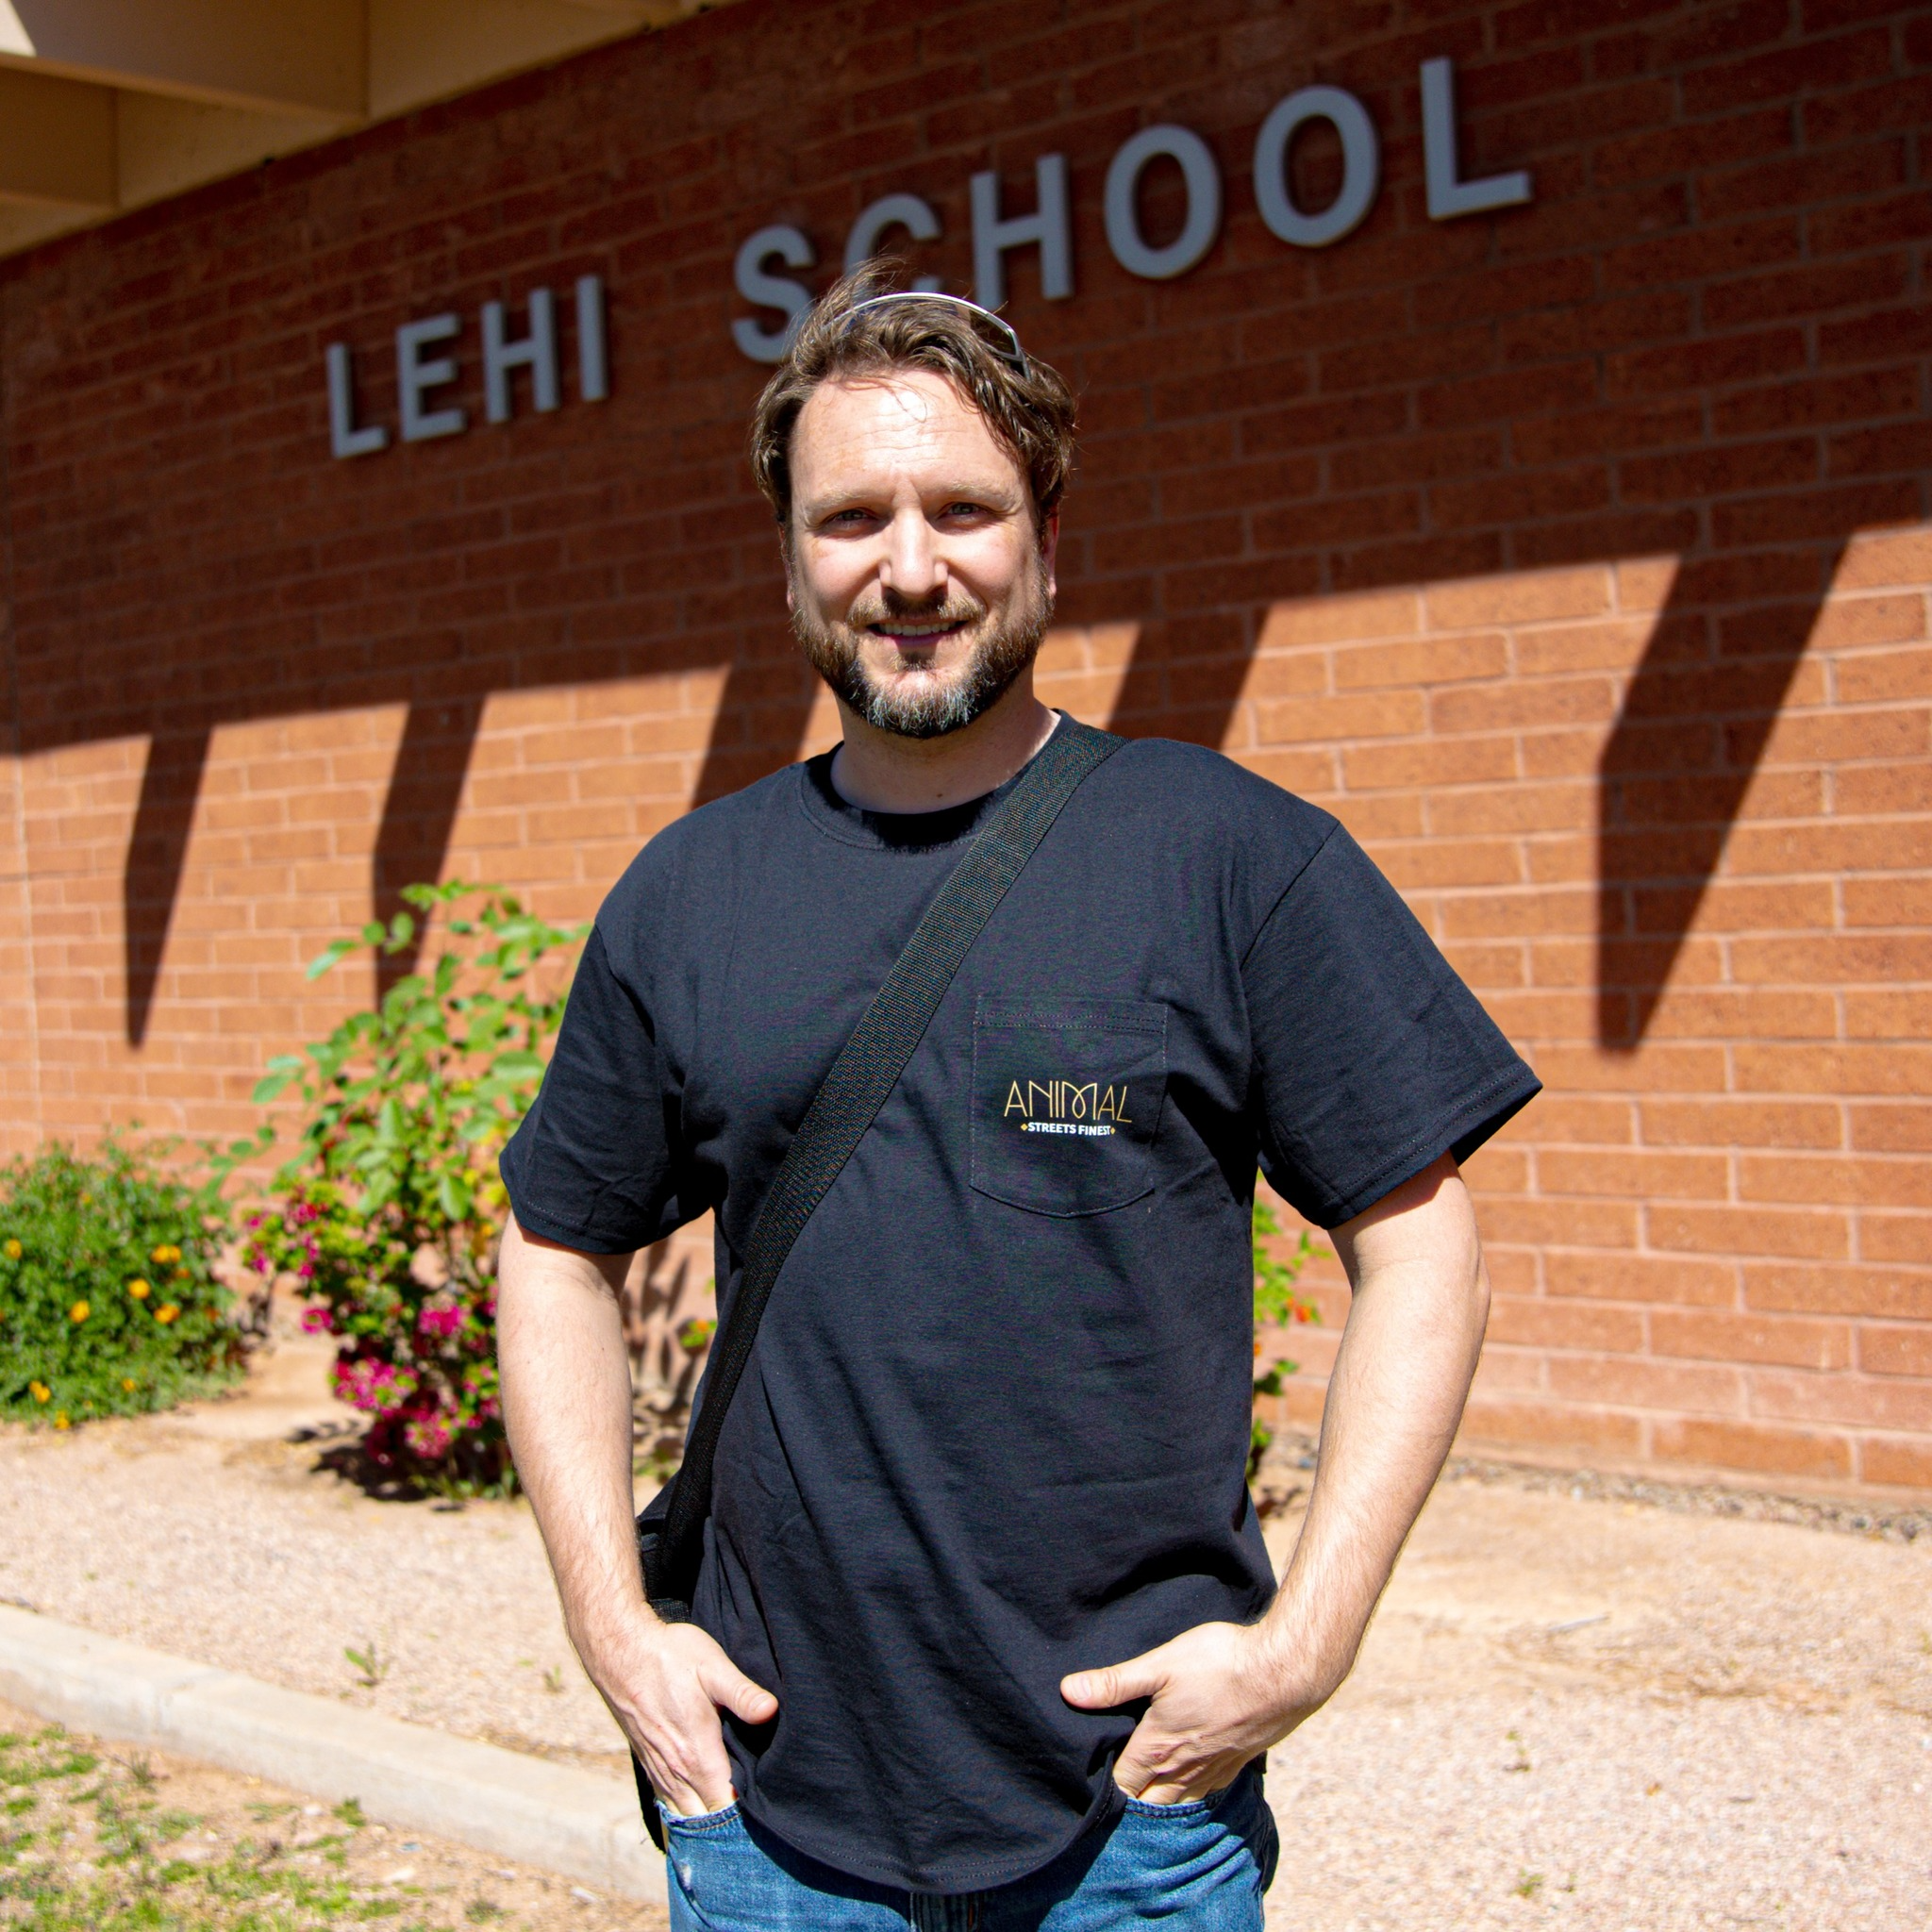 Lehi male volunteer standing in front of school